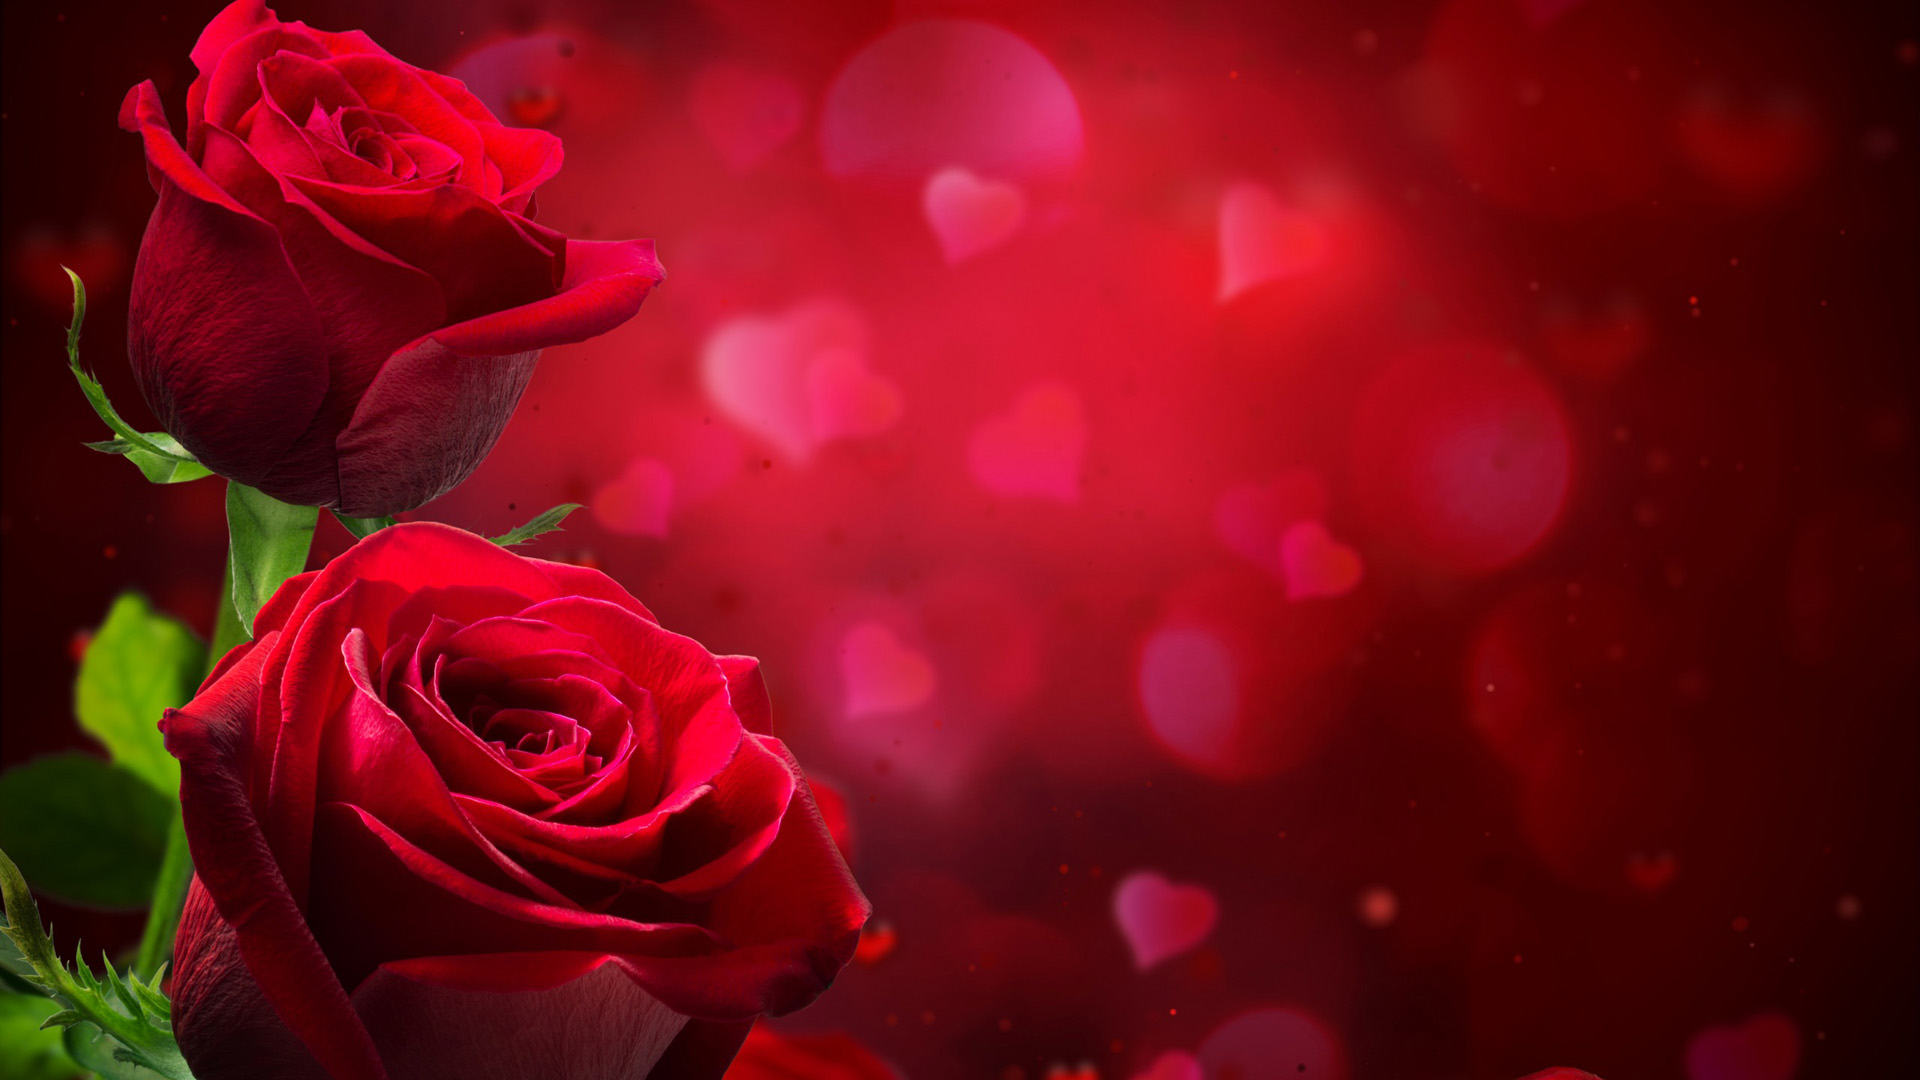 红色玫瑰花爱心背景桌面壁纸高清大图预览1920x1080